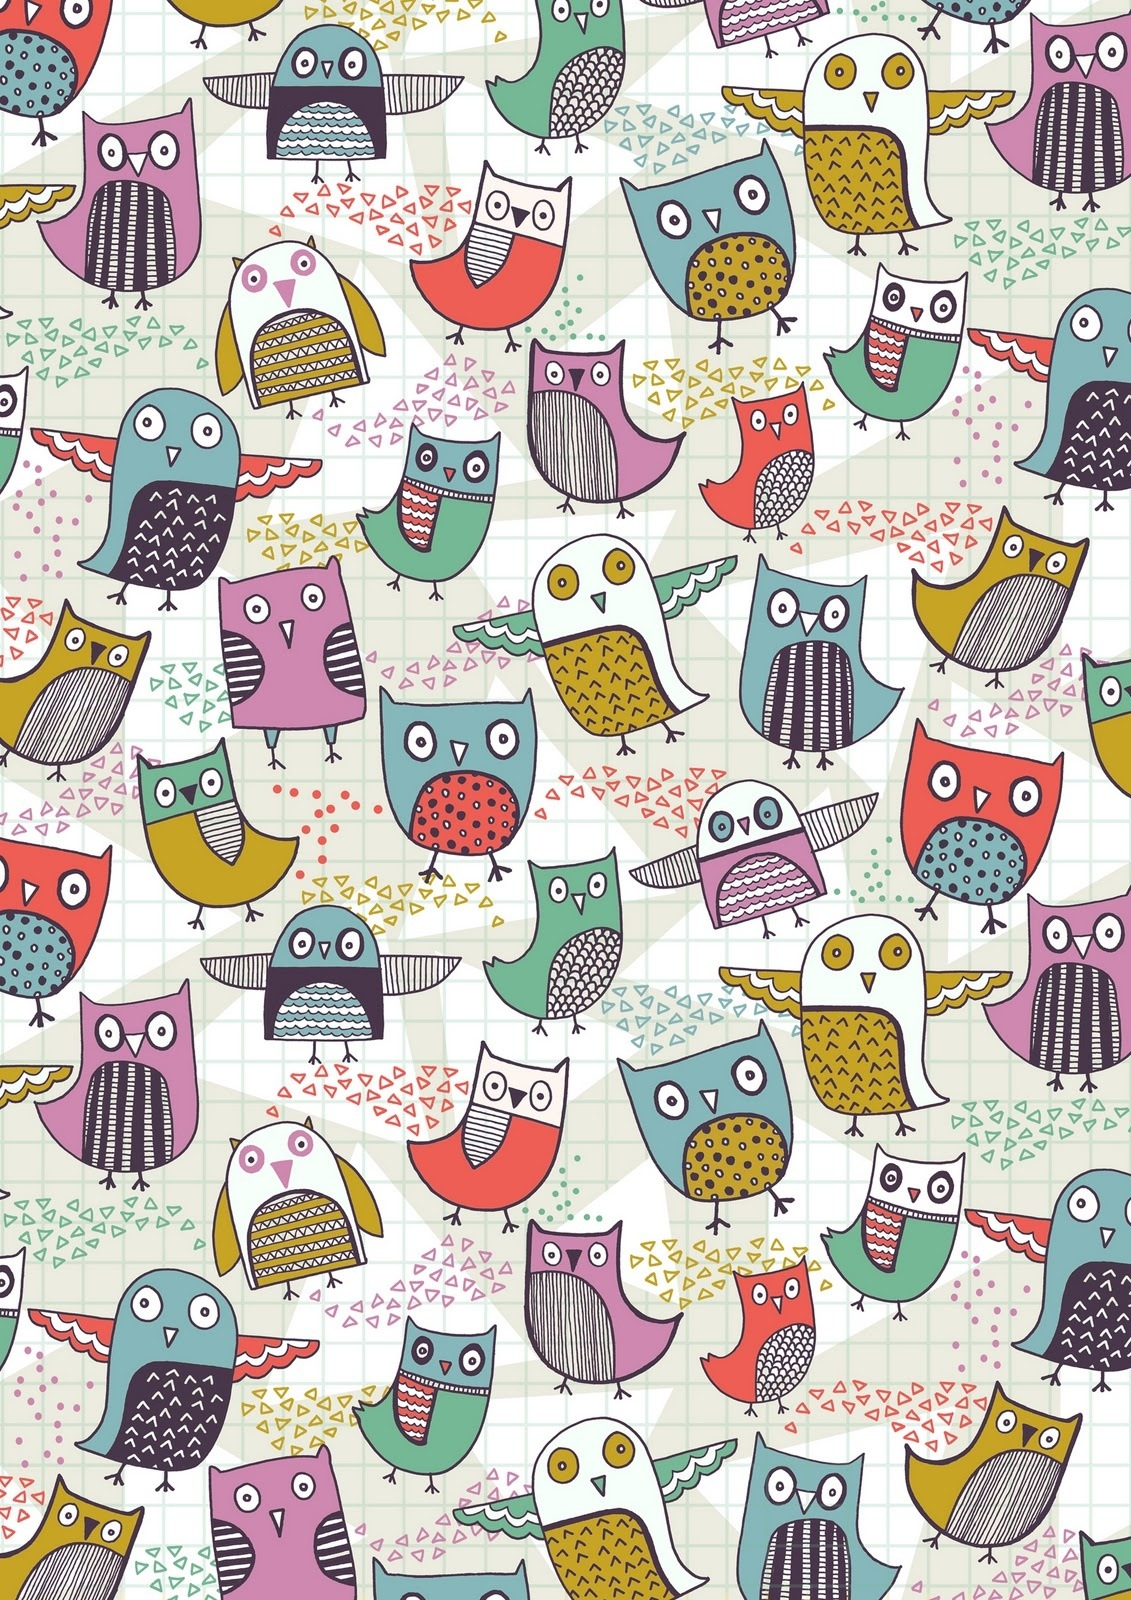 Lihat Owl Iphone Wallpaper Wallpapersafari Pinterest Lucu Hd Di